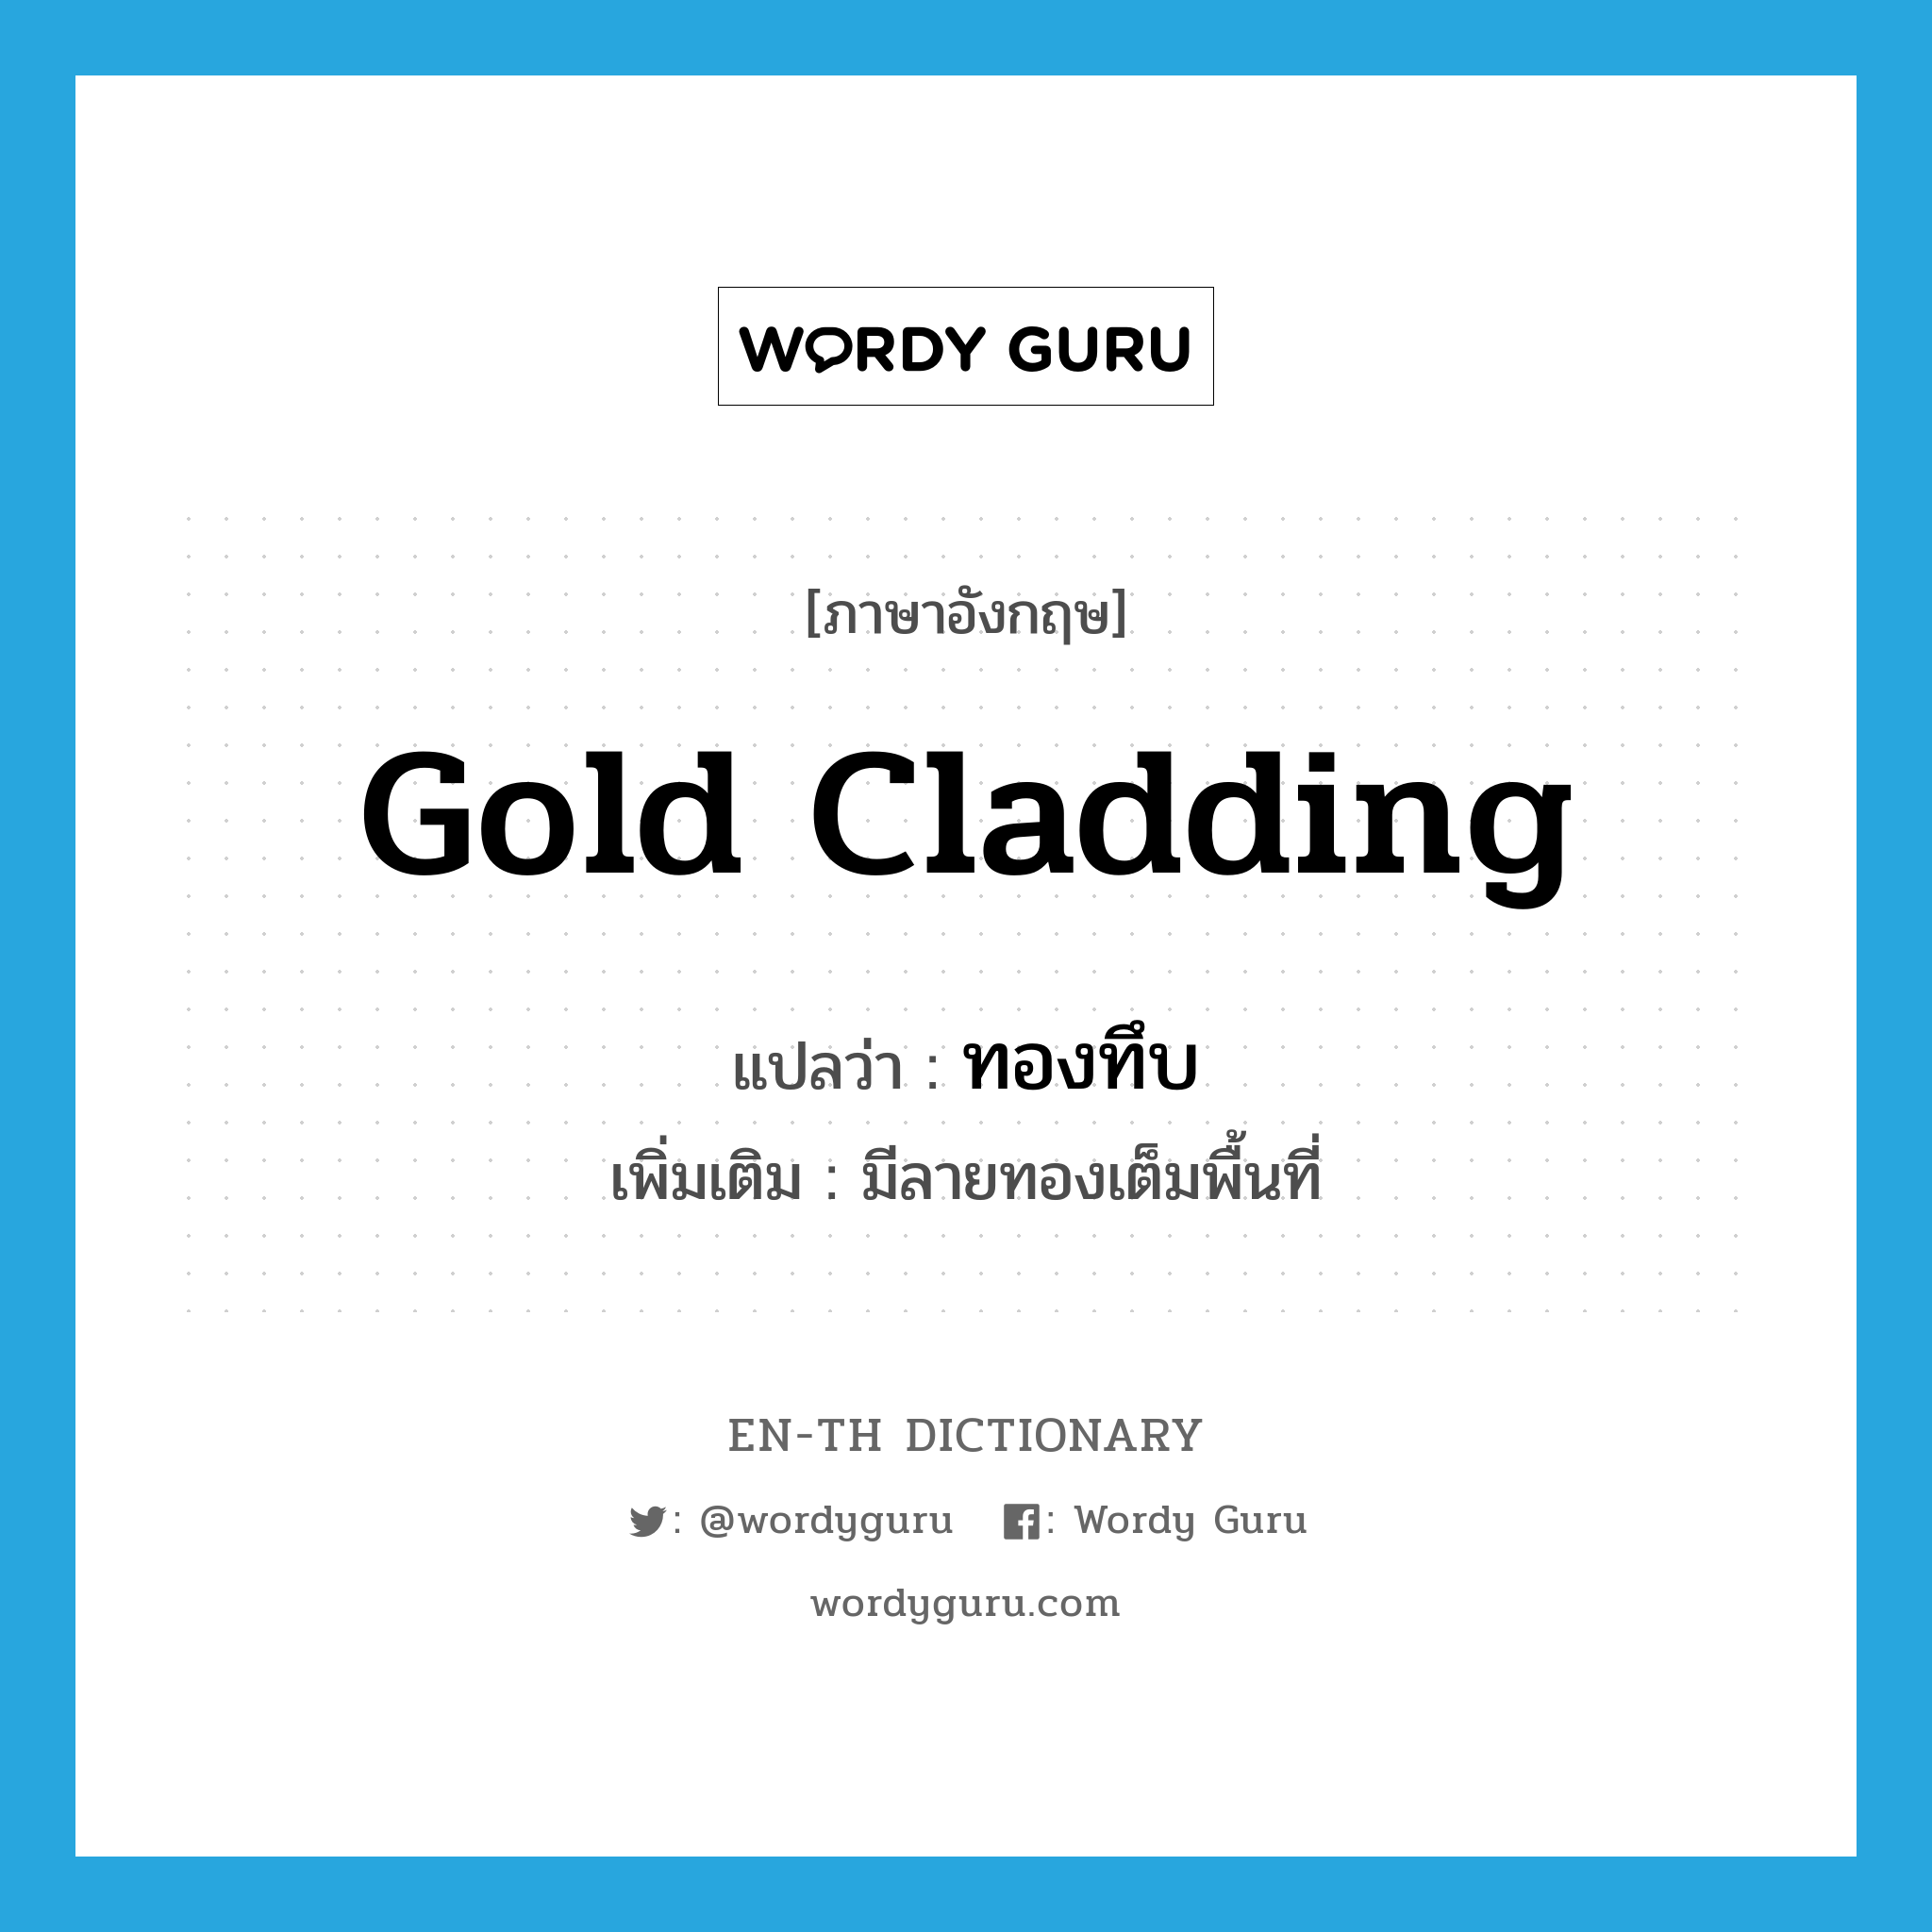 gold cladding แปลว่า?, คำศัพท์ภาษาอังกฤษ gold cladding แปลว่า ทองทึบ ประเภท ADJ เพิ่มเติม มีลายทองเต็มพื้นที่ หมวด ADJ